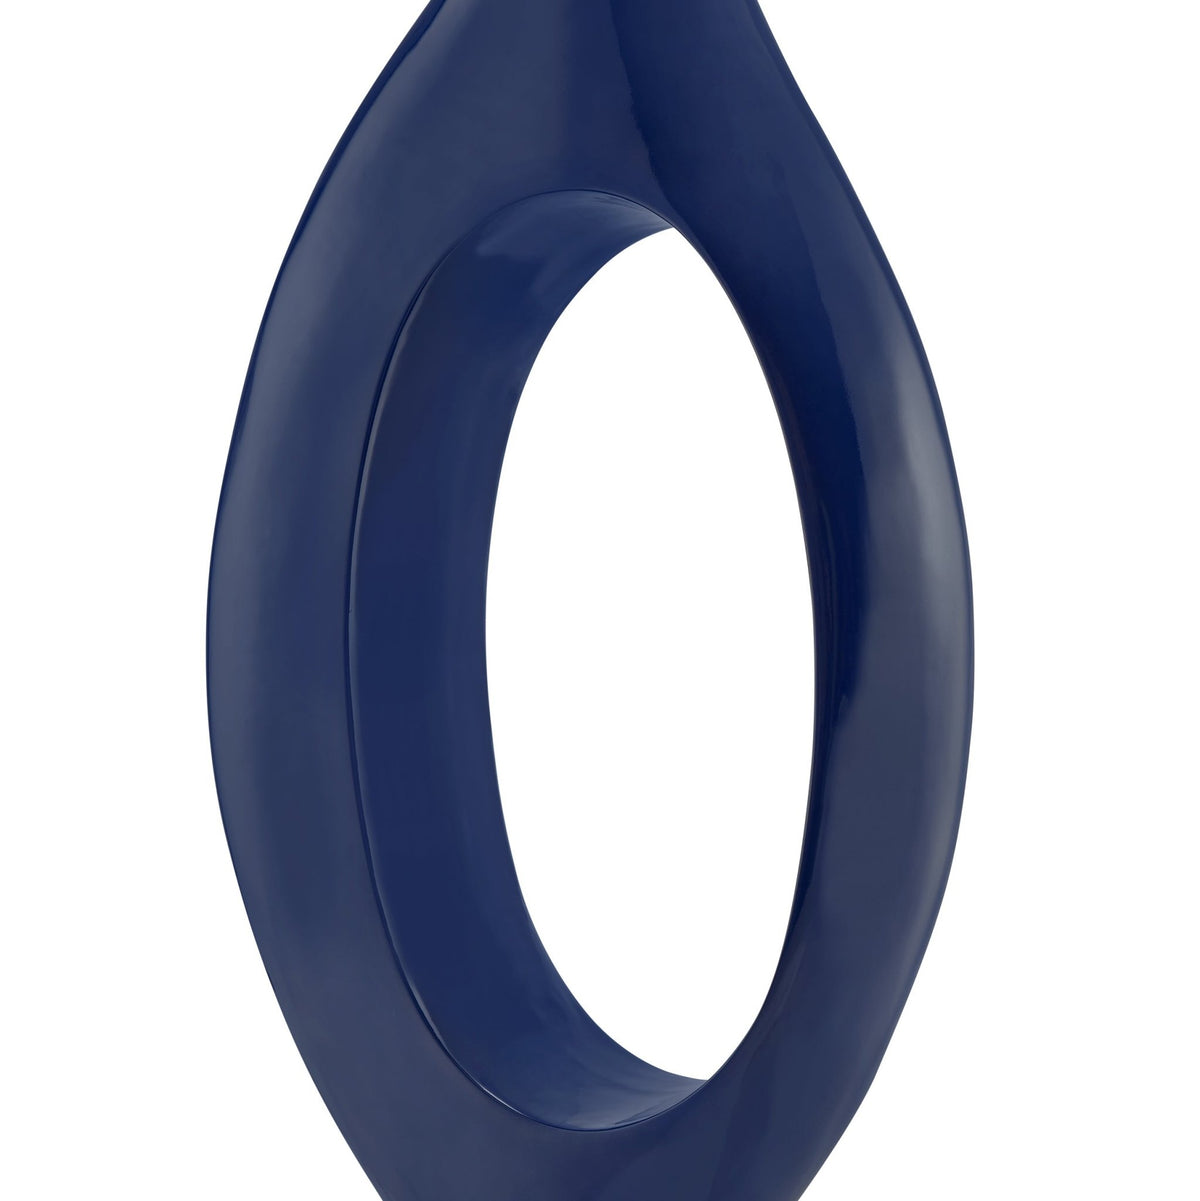 Trombone Vase in Navy Blue / Small / Modern Decor